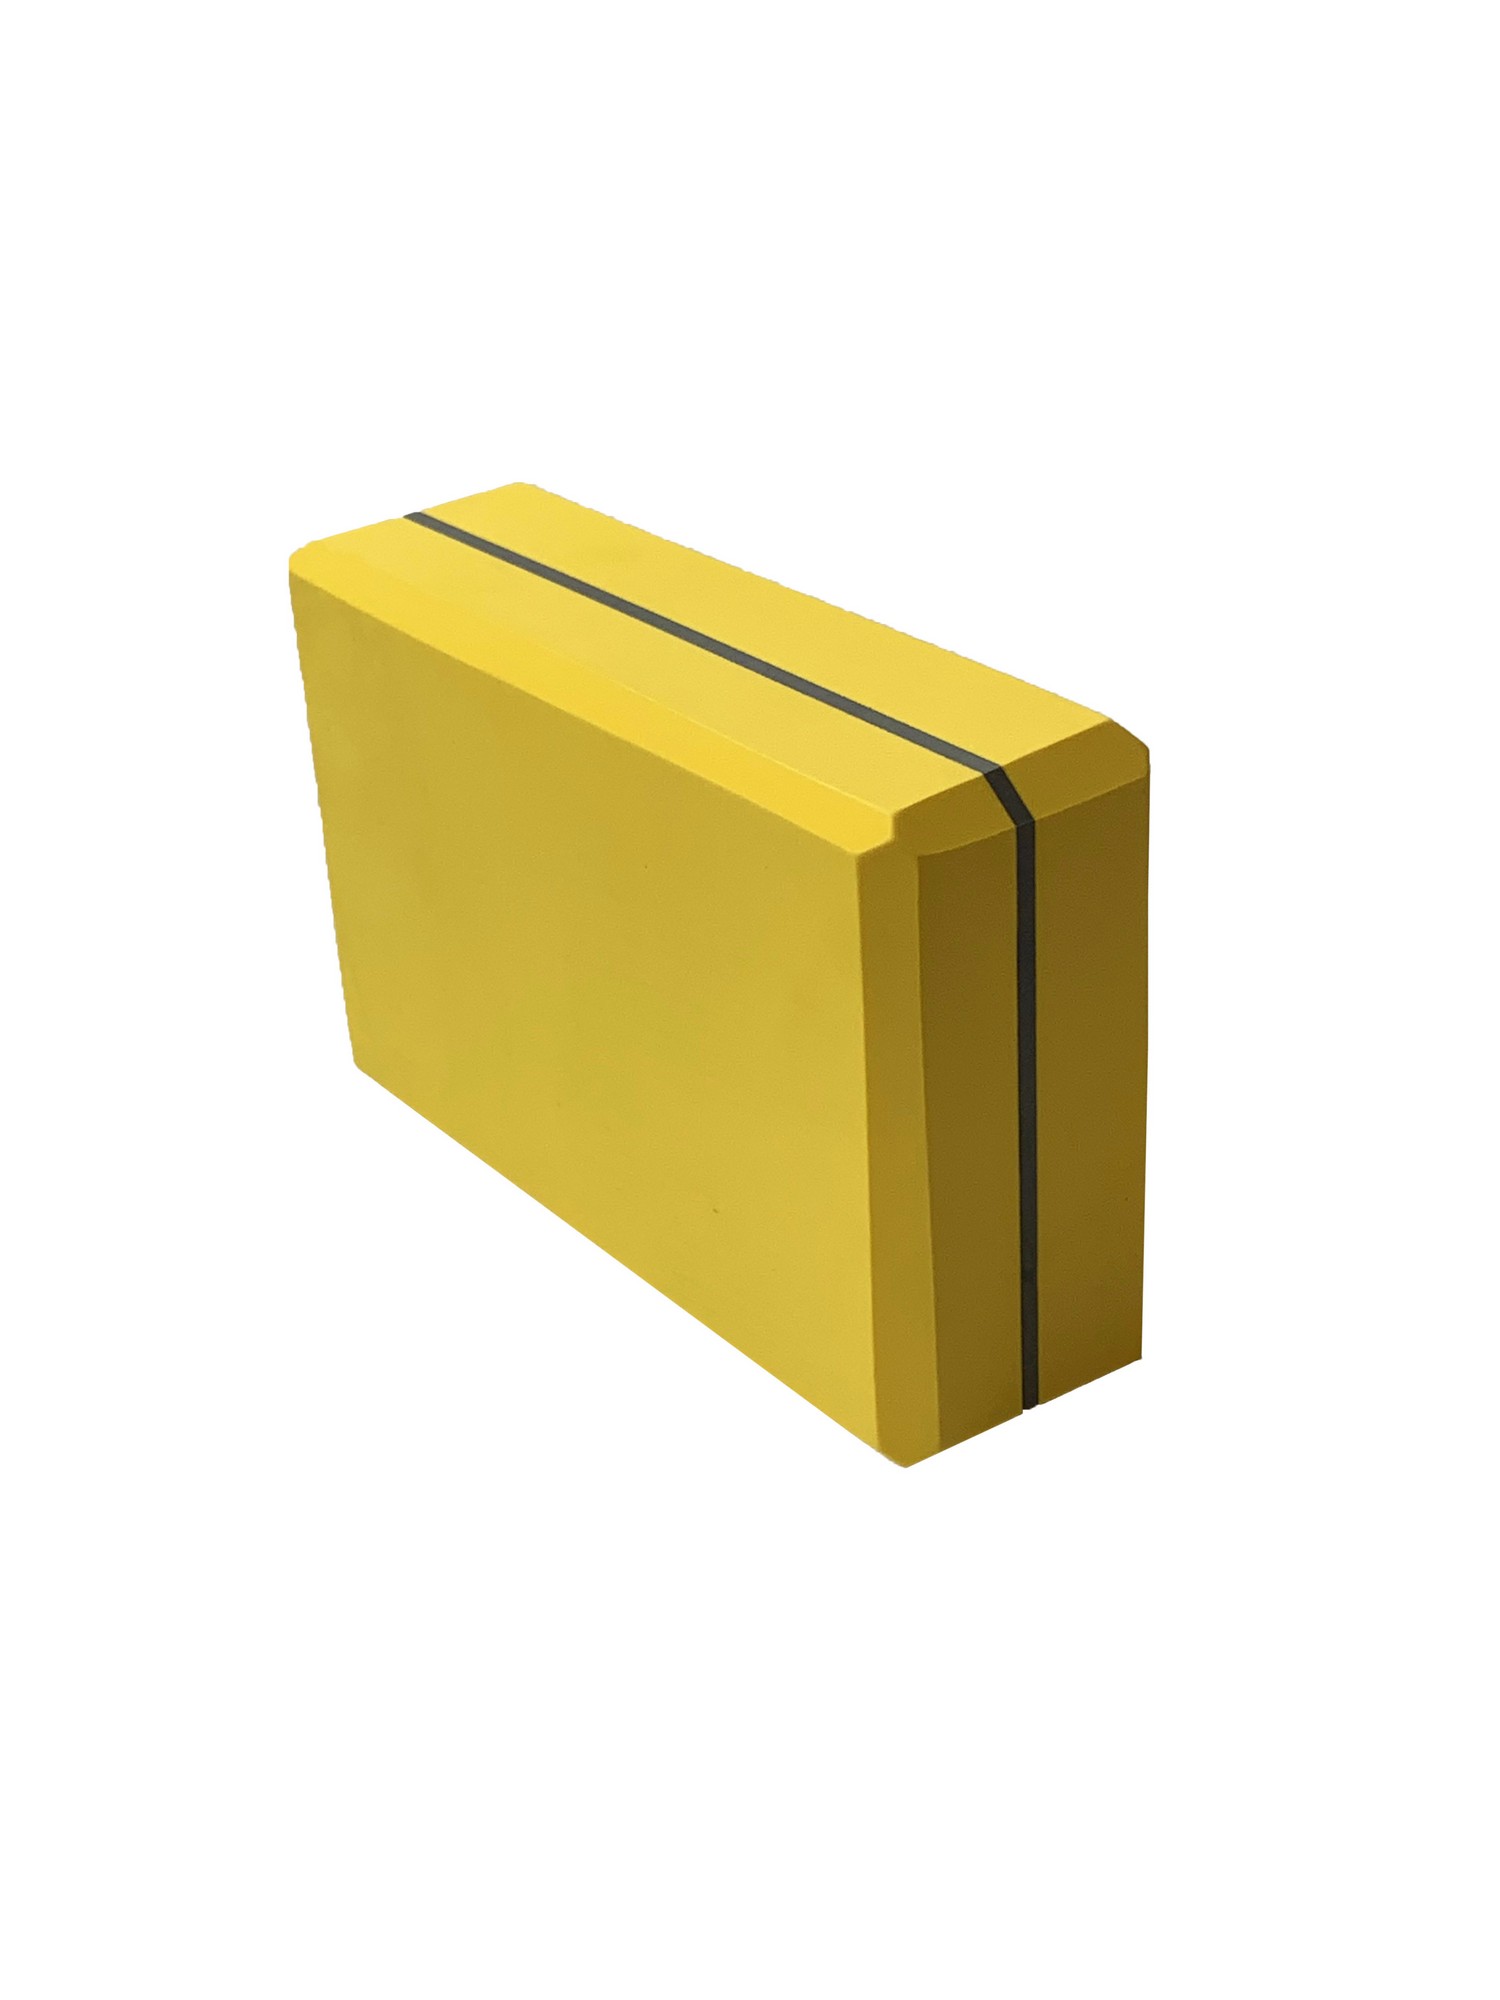 Йога блок Sportex полумягкий, из вспененного ЭВА 22,3х15х7,6 см E39131-55 желтый